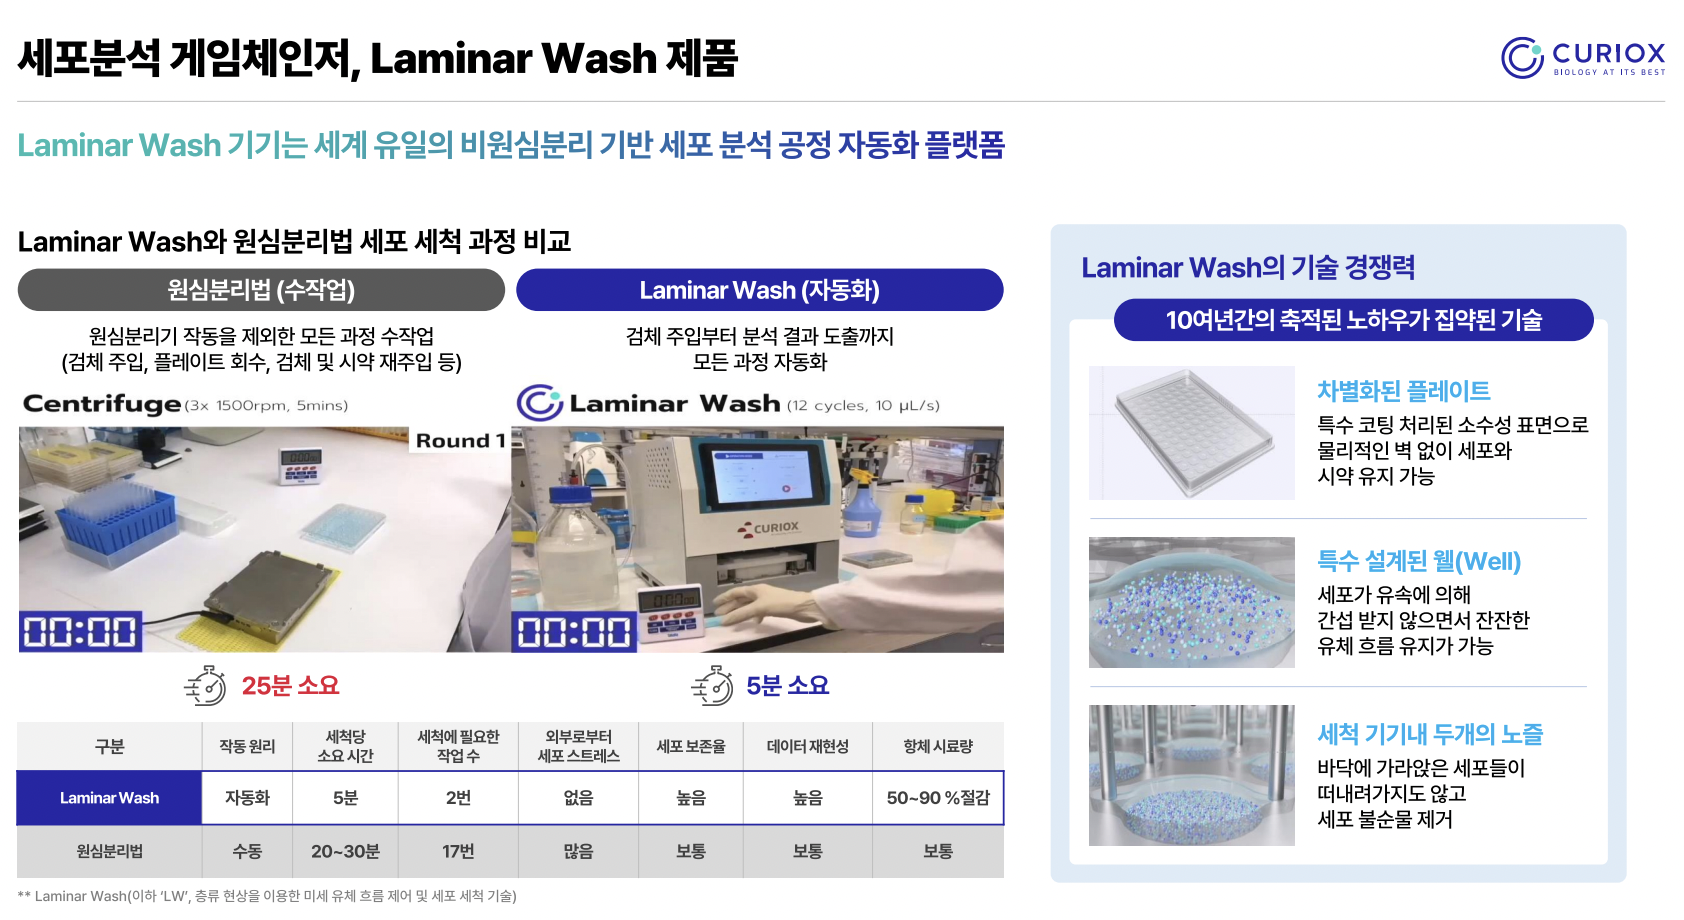 큐리옥스바이오시스템즈 핵심 제품 Laminar Wash Auto